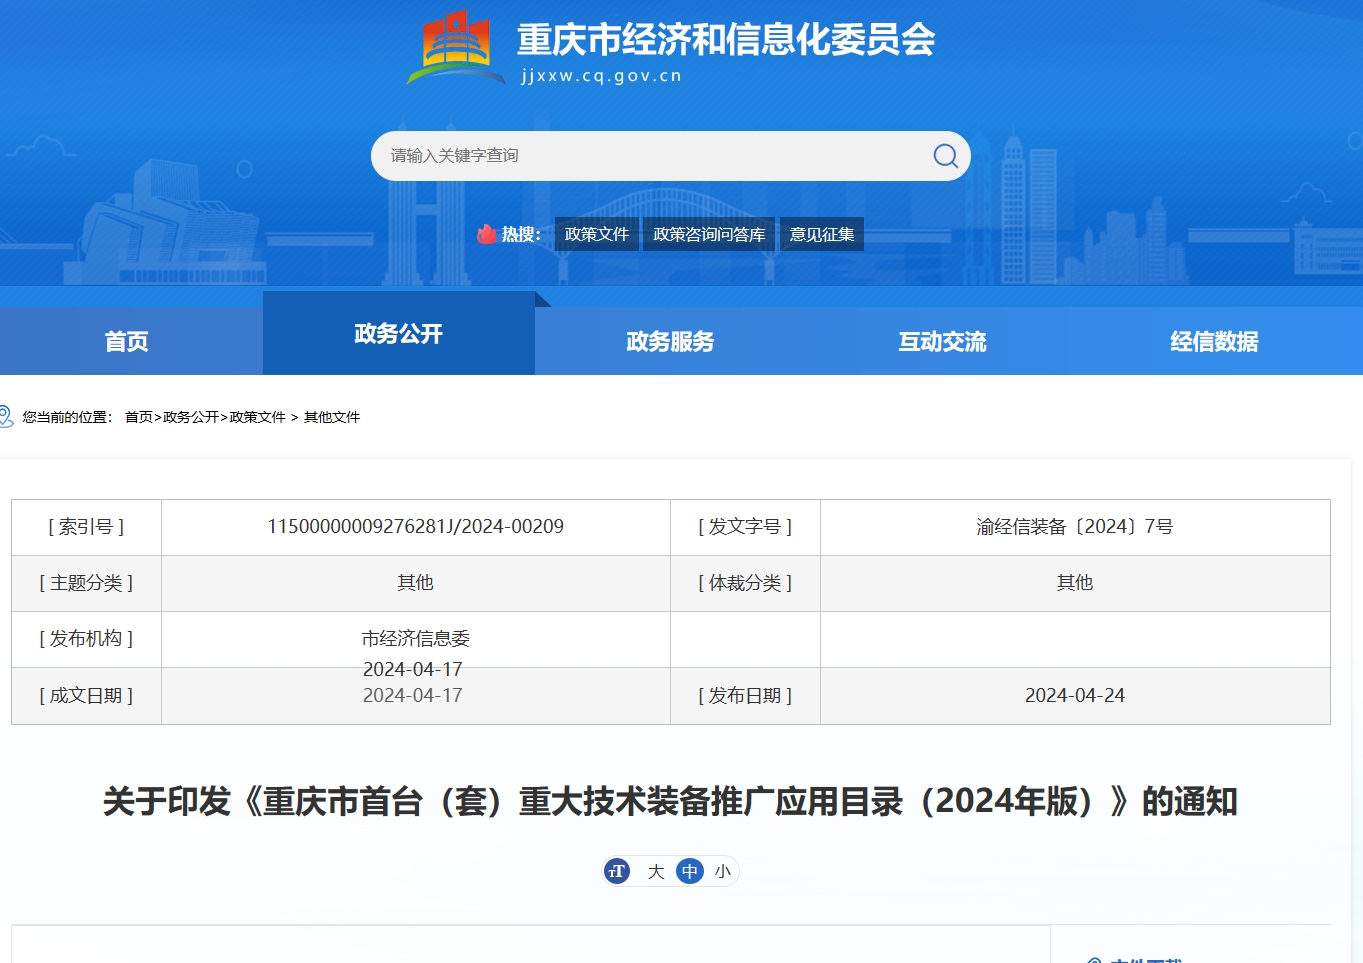 《重庆市首台（套）重大技术装备推广应用目录（2024年版）》发布